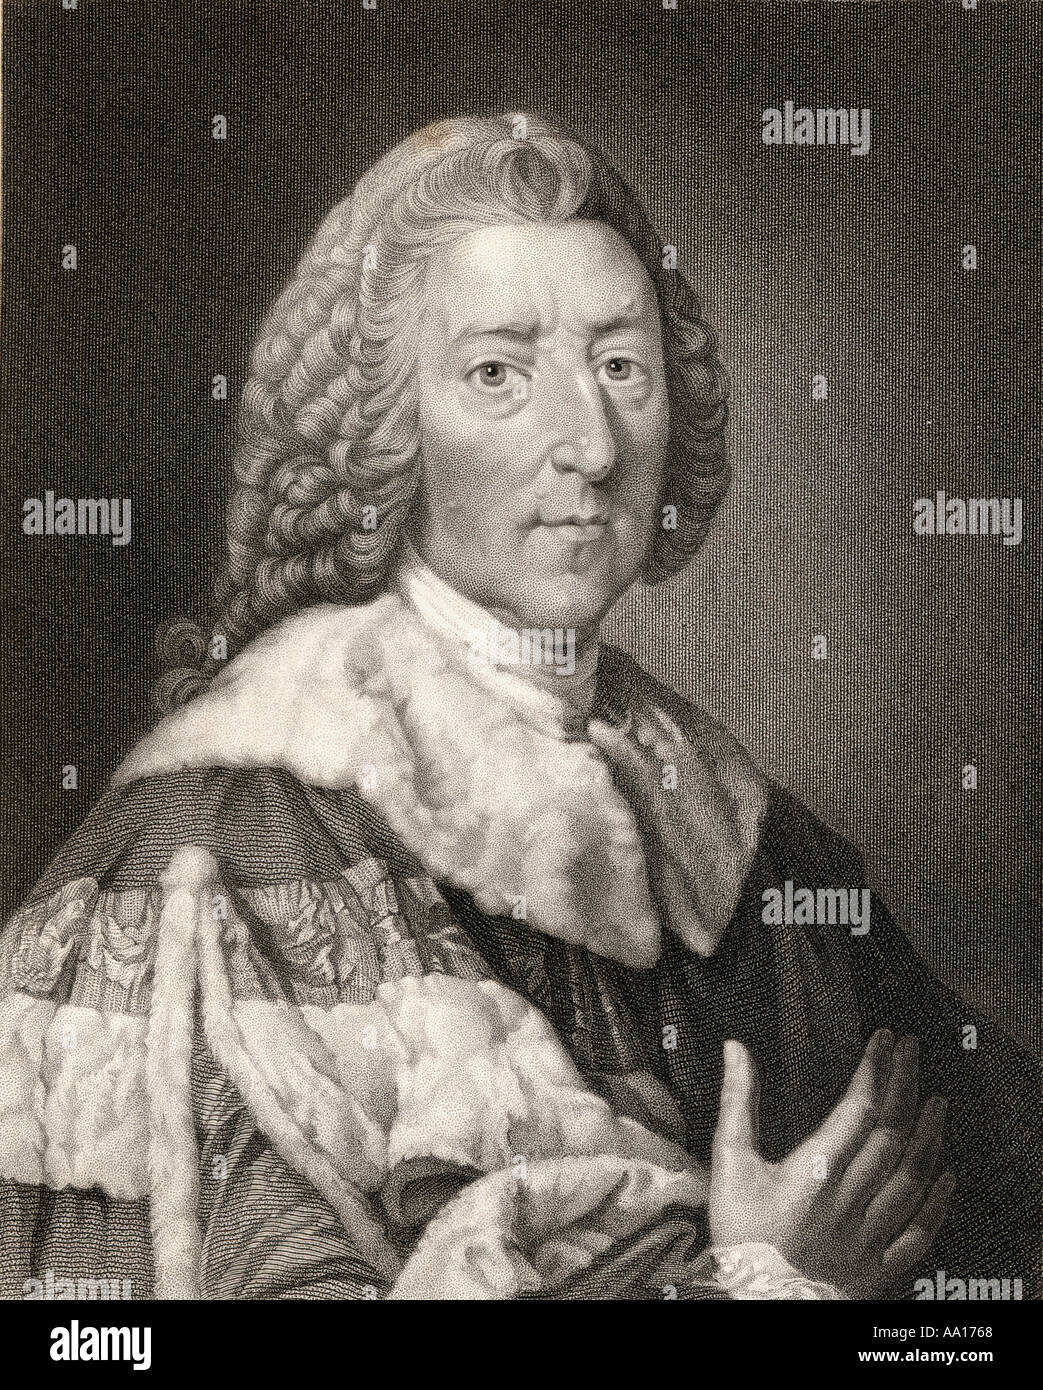 William Pitt der Ältere, 1st Earl of Chatham, 1708 - 1788. Englischer Staatsmann und zweimal Premierminister von Großbritannien. Stockfoto